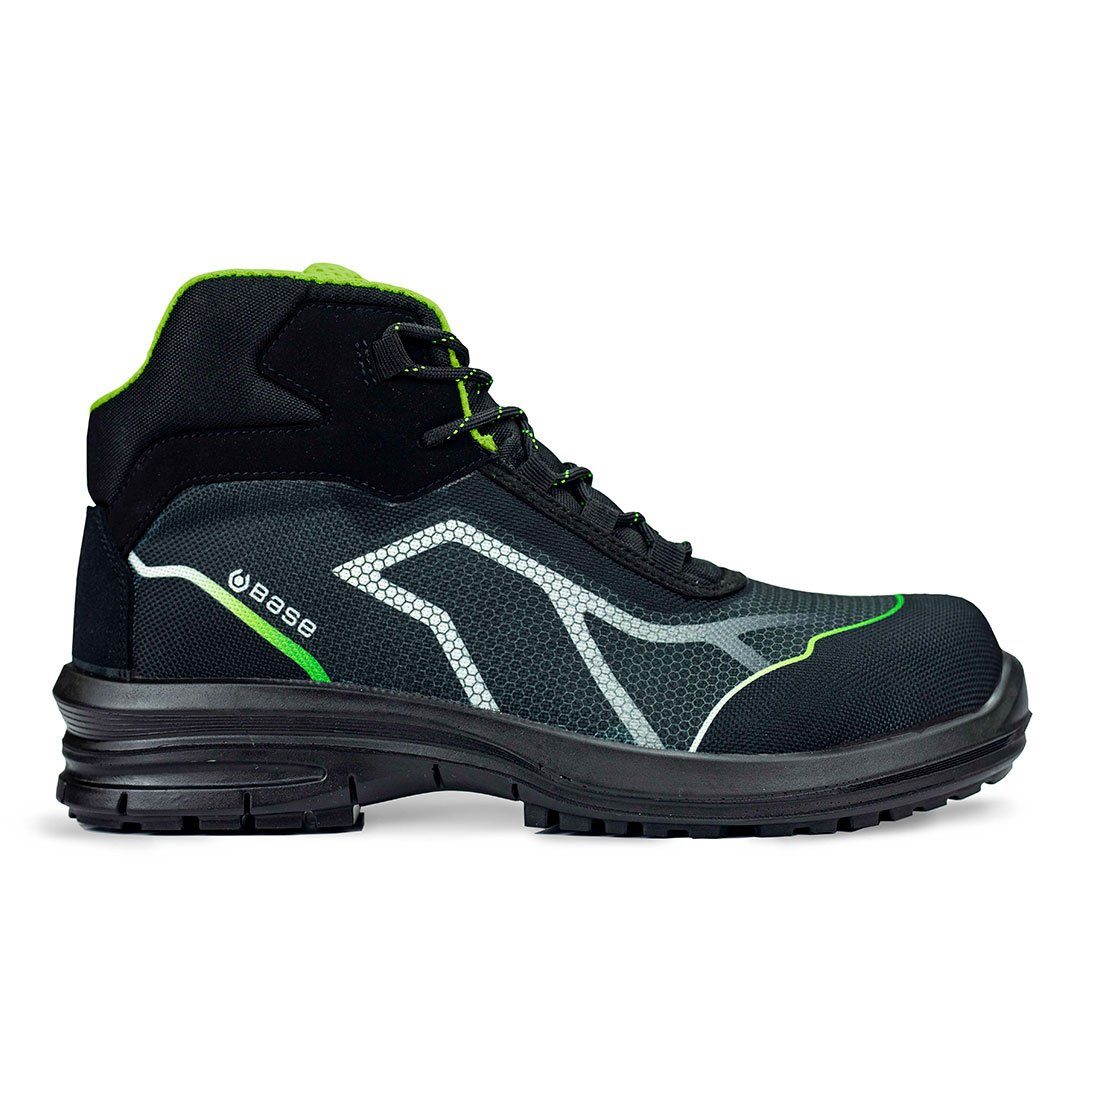 Sicherheitsschuhe S3 metallfrei TOP (Knöchelstiefel) schwarz/grün Base Footwear OREN Sicherheitsschuh knöchelhoch